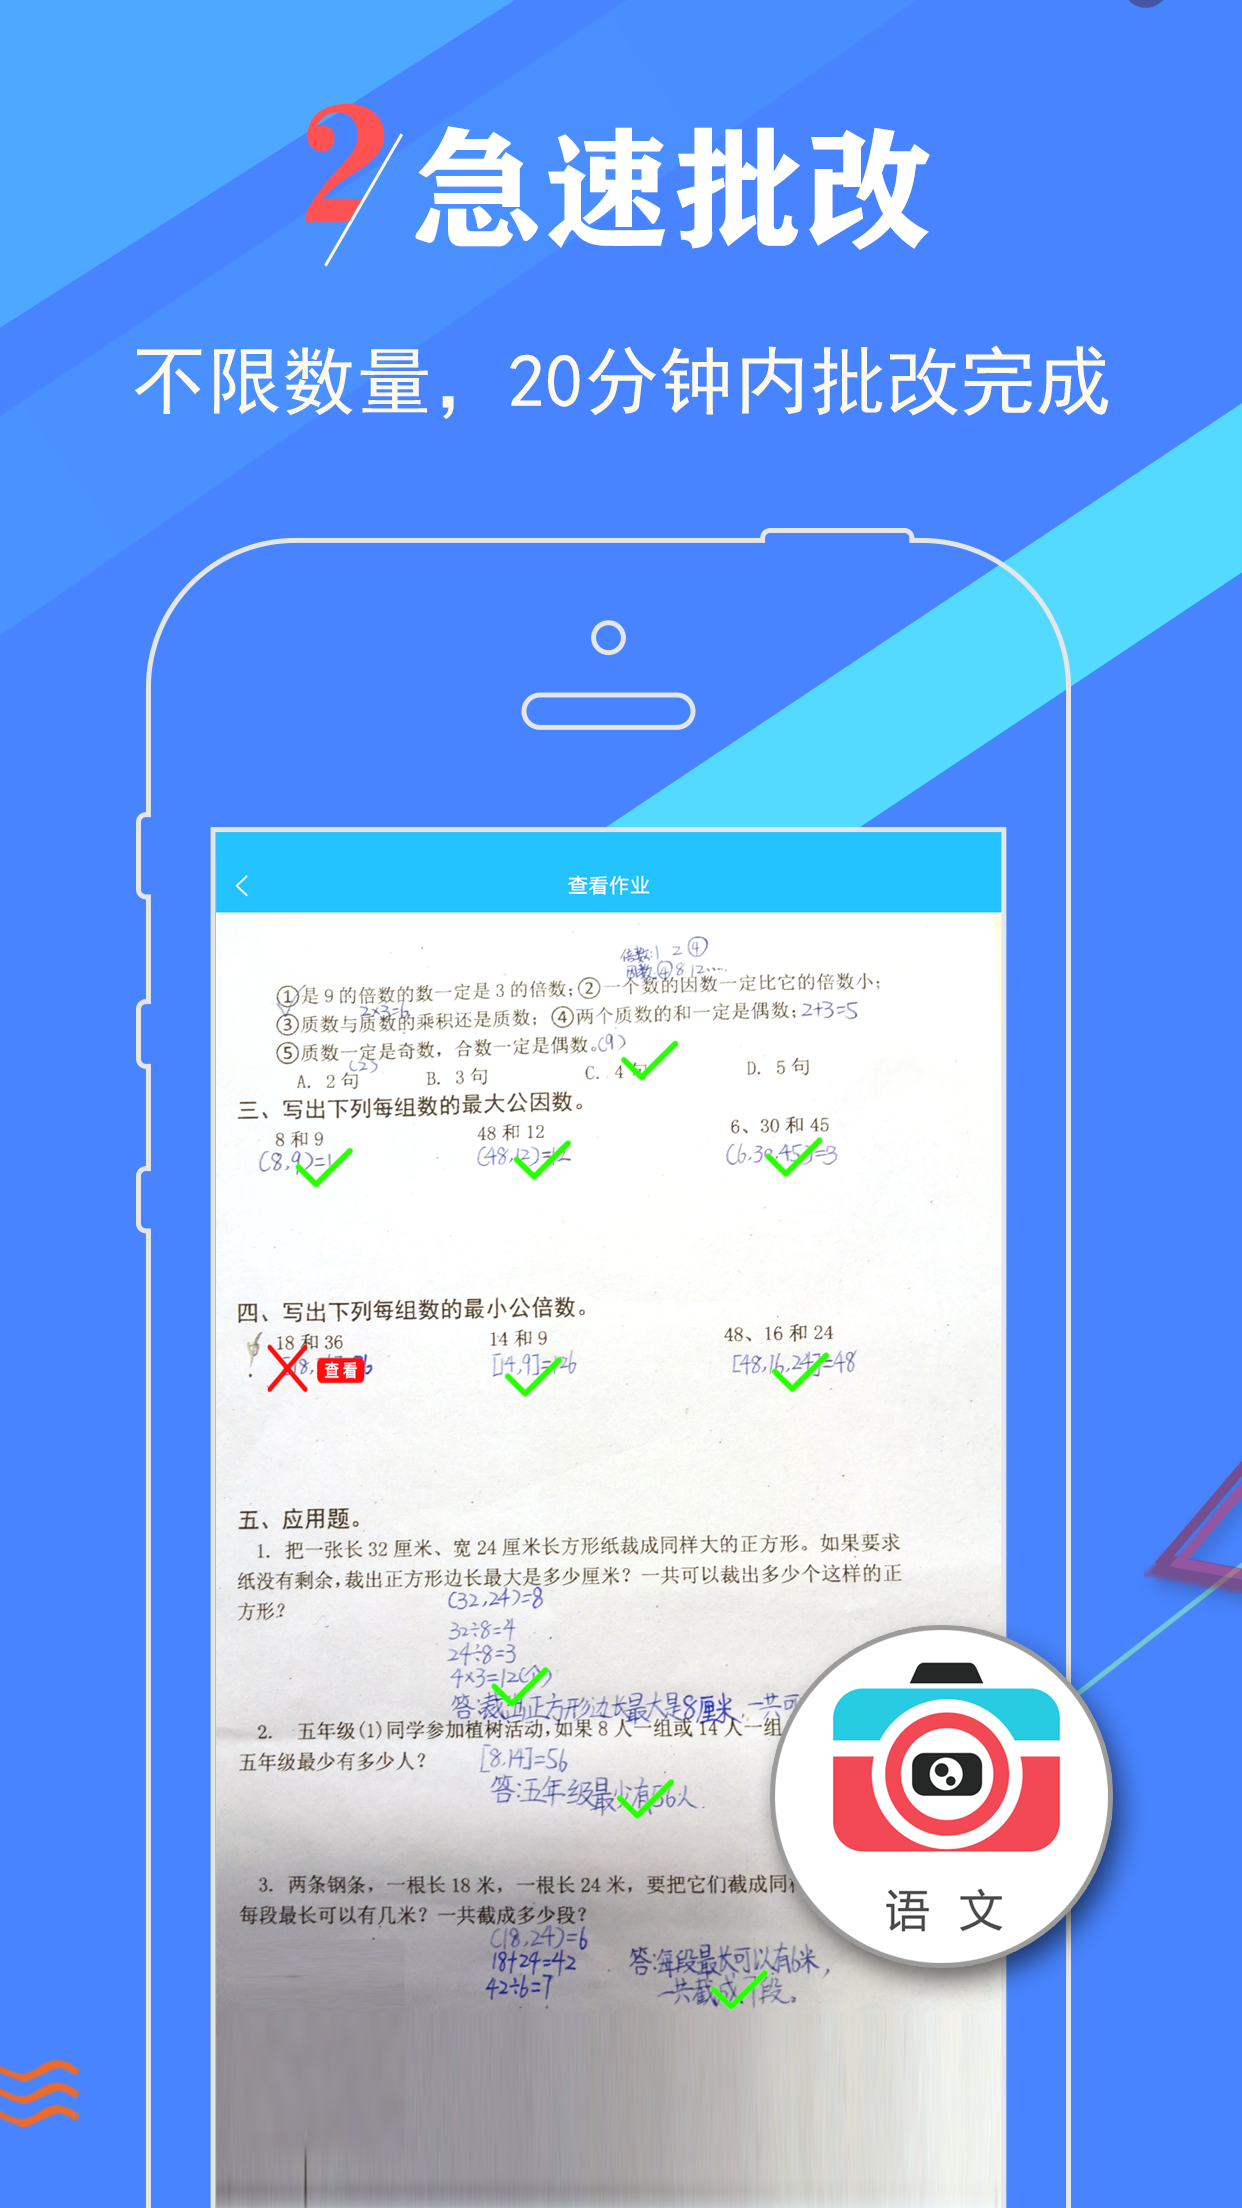 作业妈咪app下载-作业妈咪安卓版下载安装v1.0.6